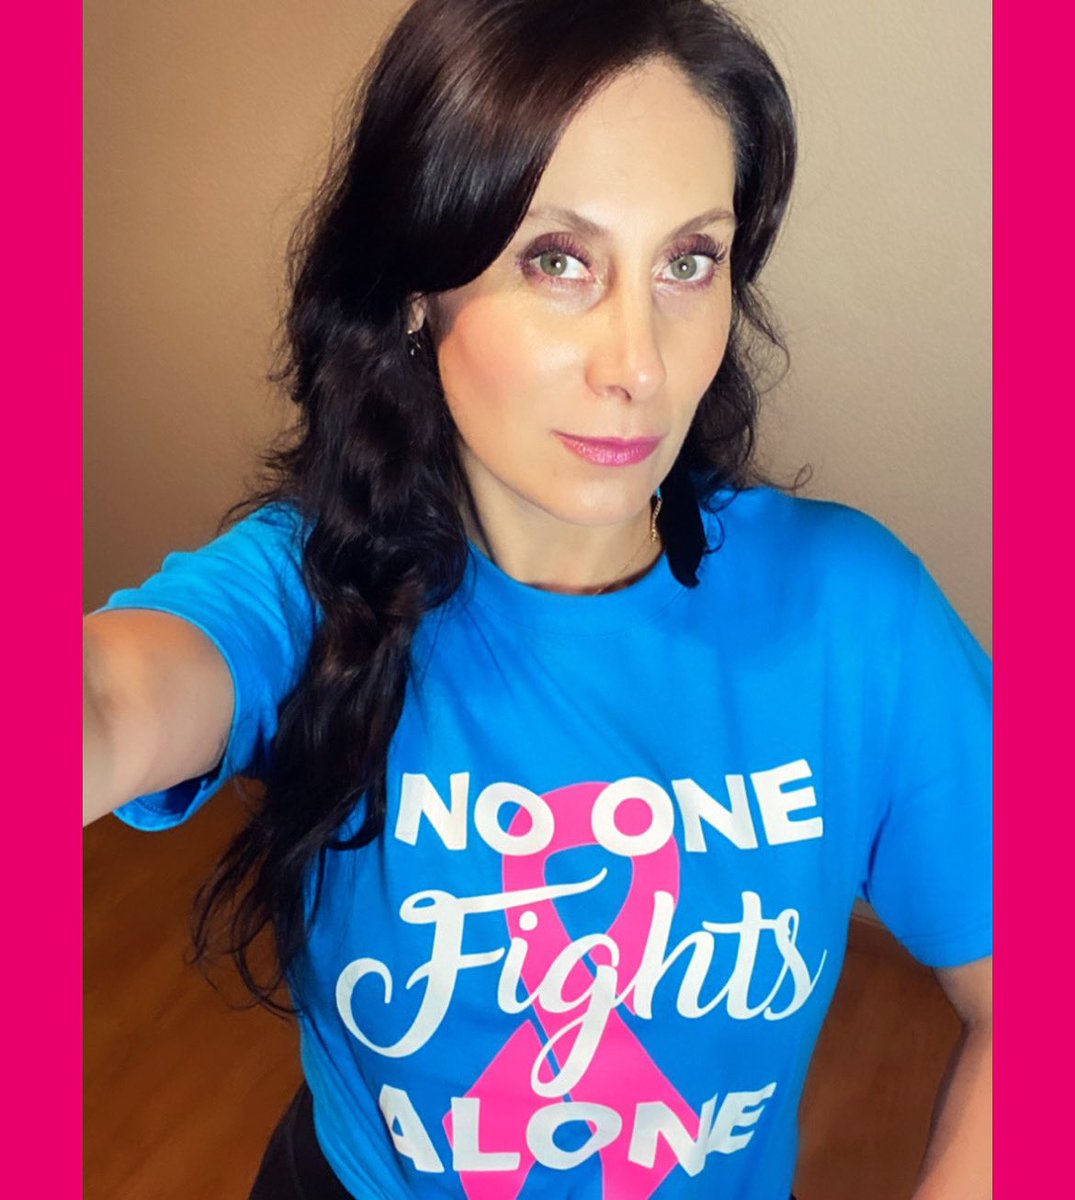 Hoy, por ti y por todas las que luchan por sobrevivir en salud y bienestar “construyendo una red de apoyo y contención en torno al cáncer de mama”
#LaDetecciónSalvaVidas
#NoOneFightsAlone 
#JuntasEnLaLuchaContraElCáncerDeMama 
@Noonealone_ @FUCAMM